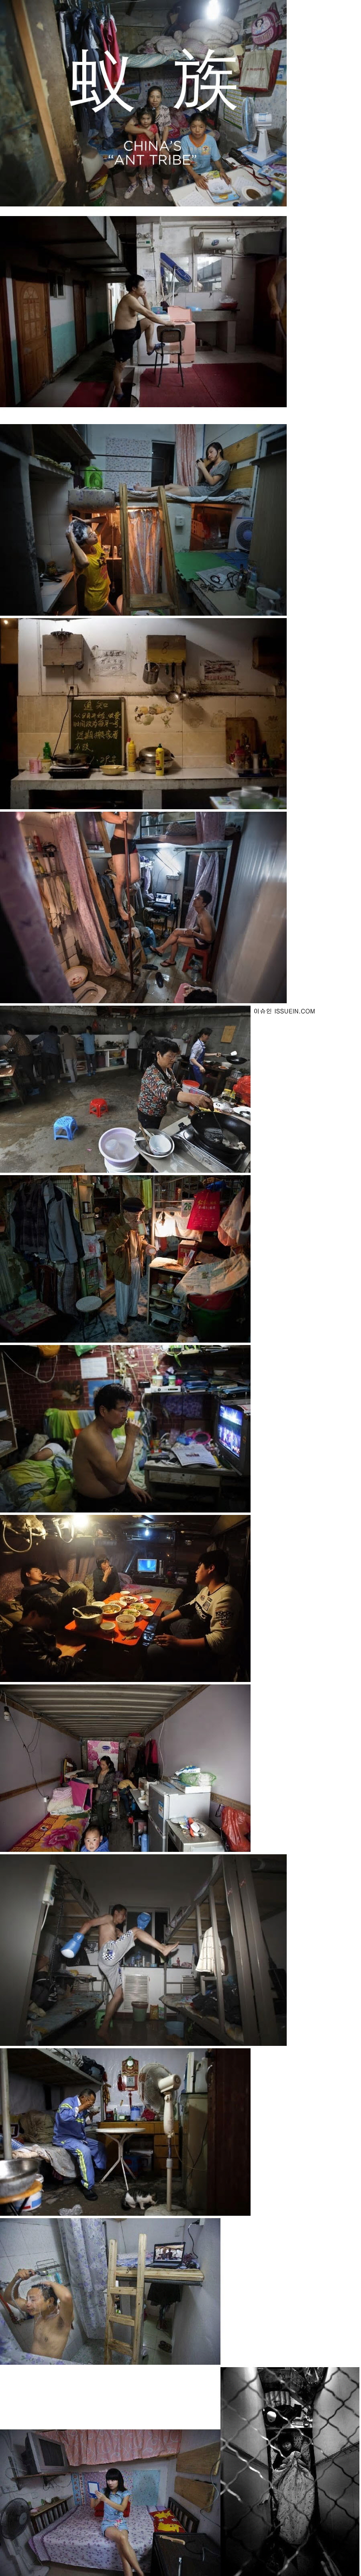 중국 빈민들의 집단 거주지역